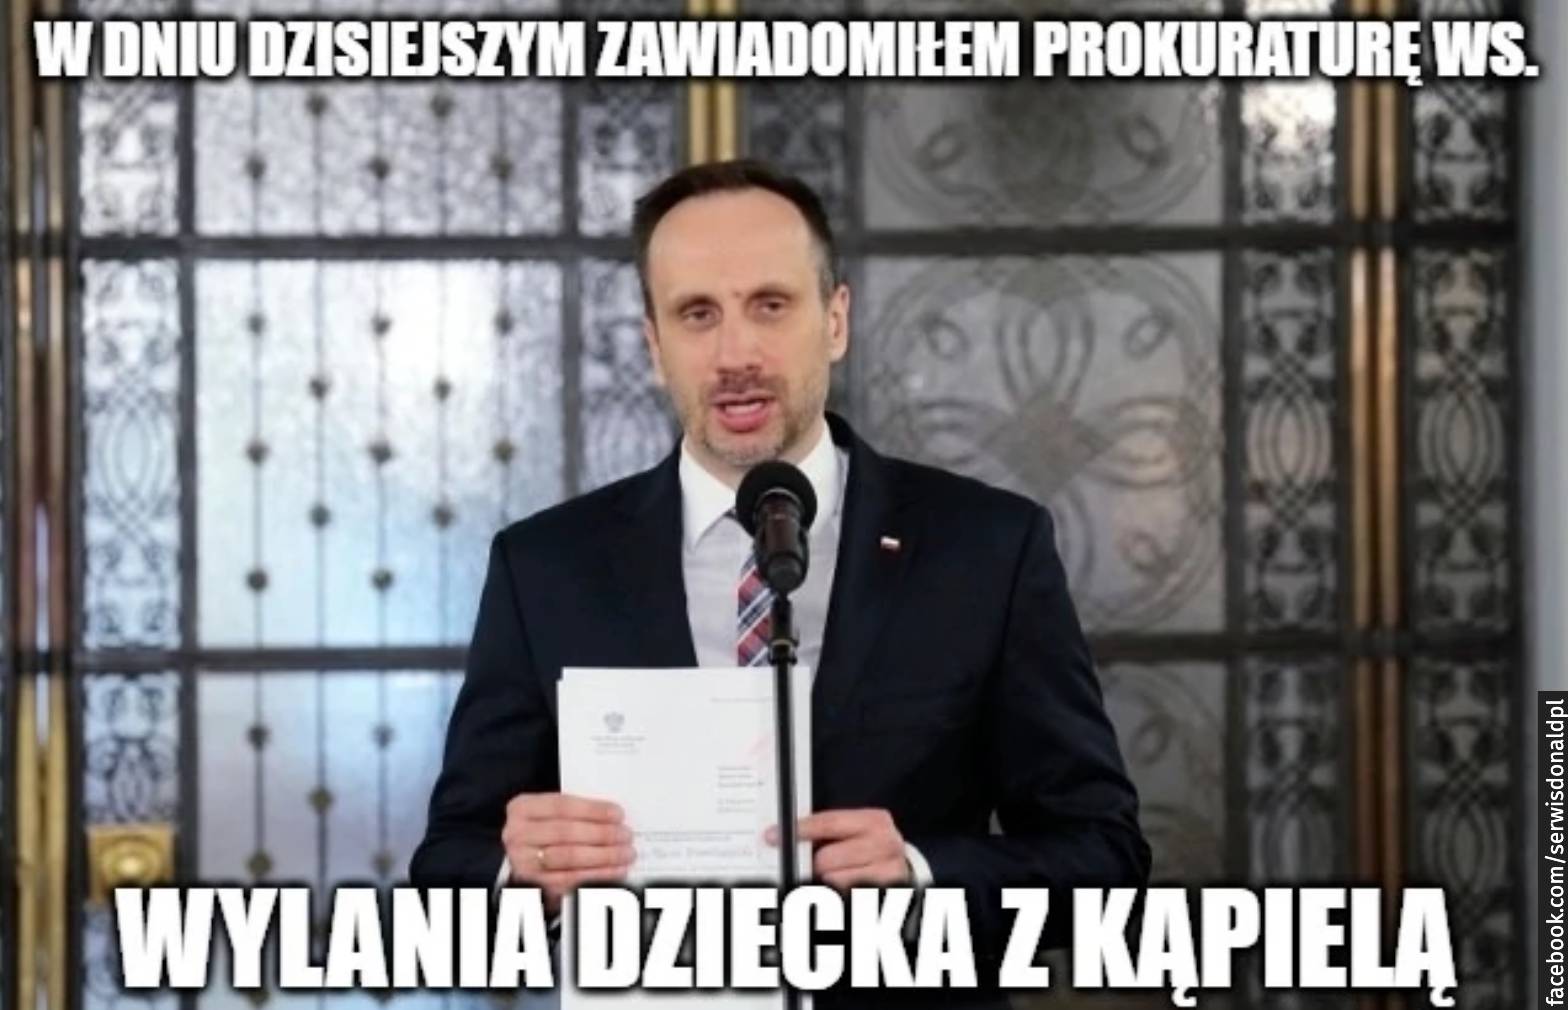 Mem – zdjęcie posła Janusza Kowalskiego, który przemawia przed mikrofonem, napis: w db=niu dzisiejszym zawiadomiłem prokuraturę w sprawie wylania dziecka z kąpielą